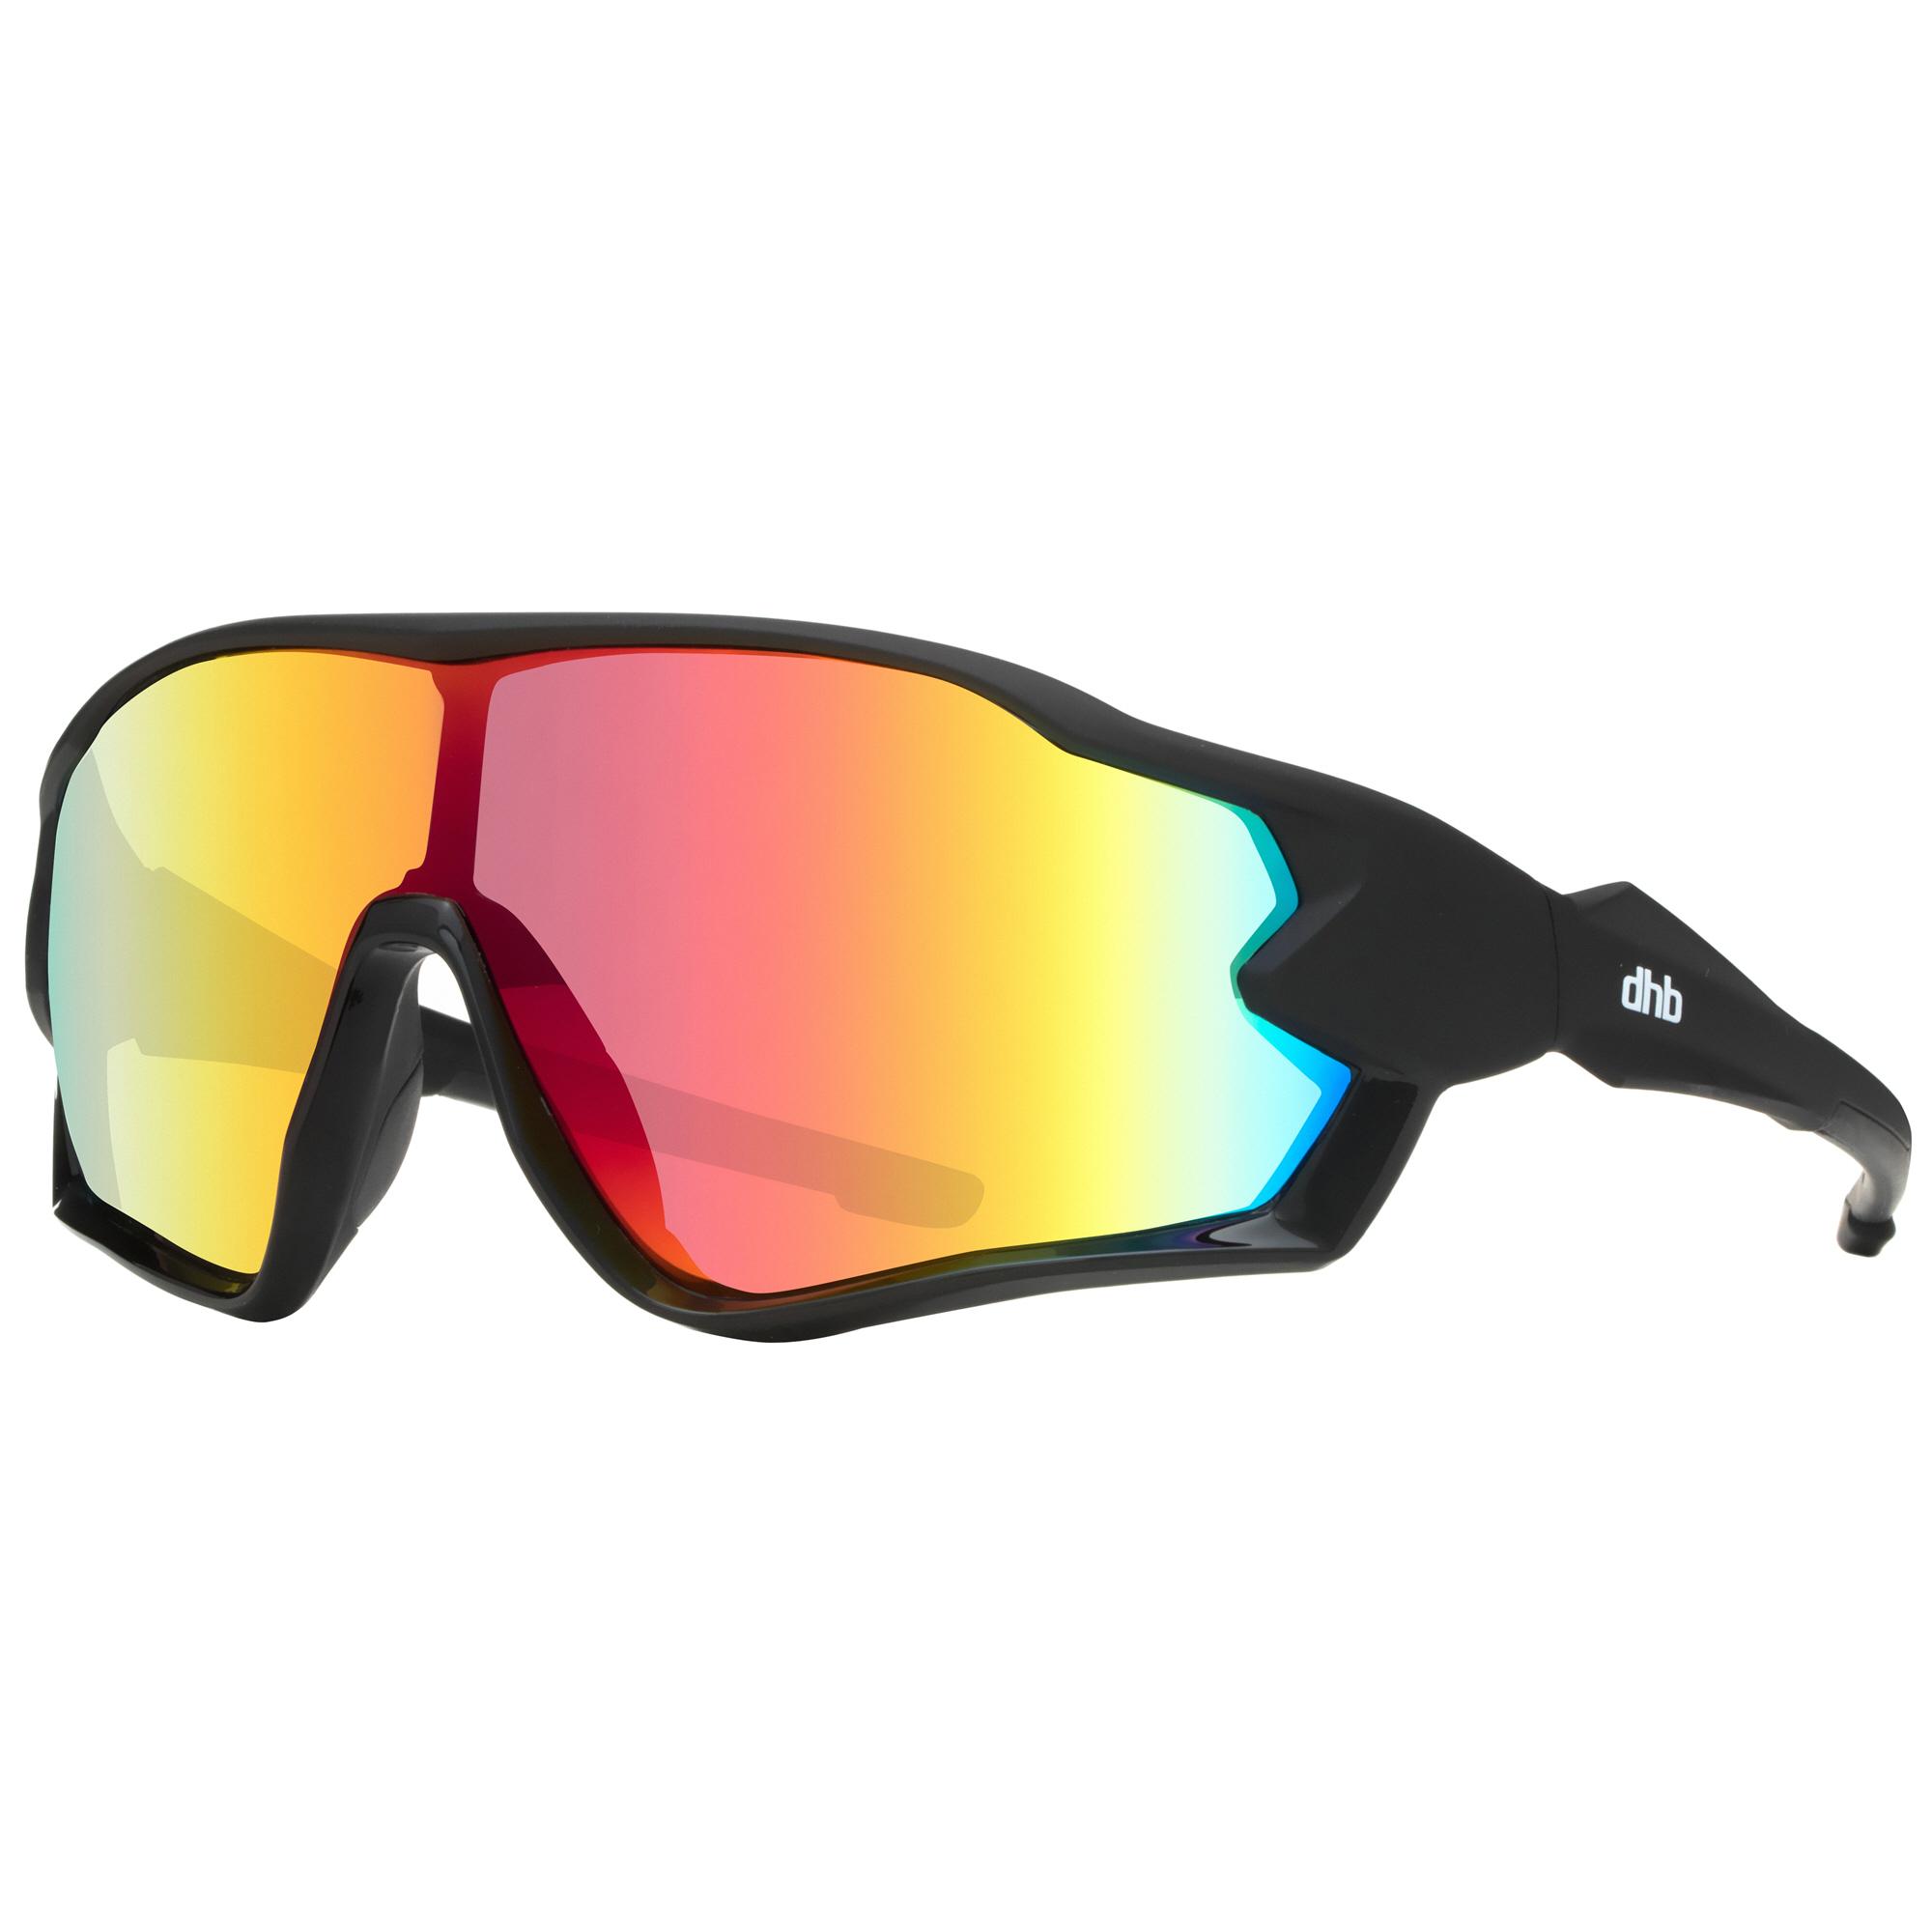 Dhb Fractal Revo Lens Sunglasses - Matte Black/black